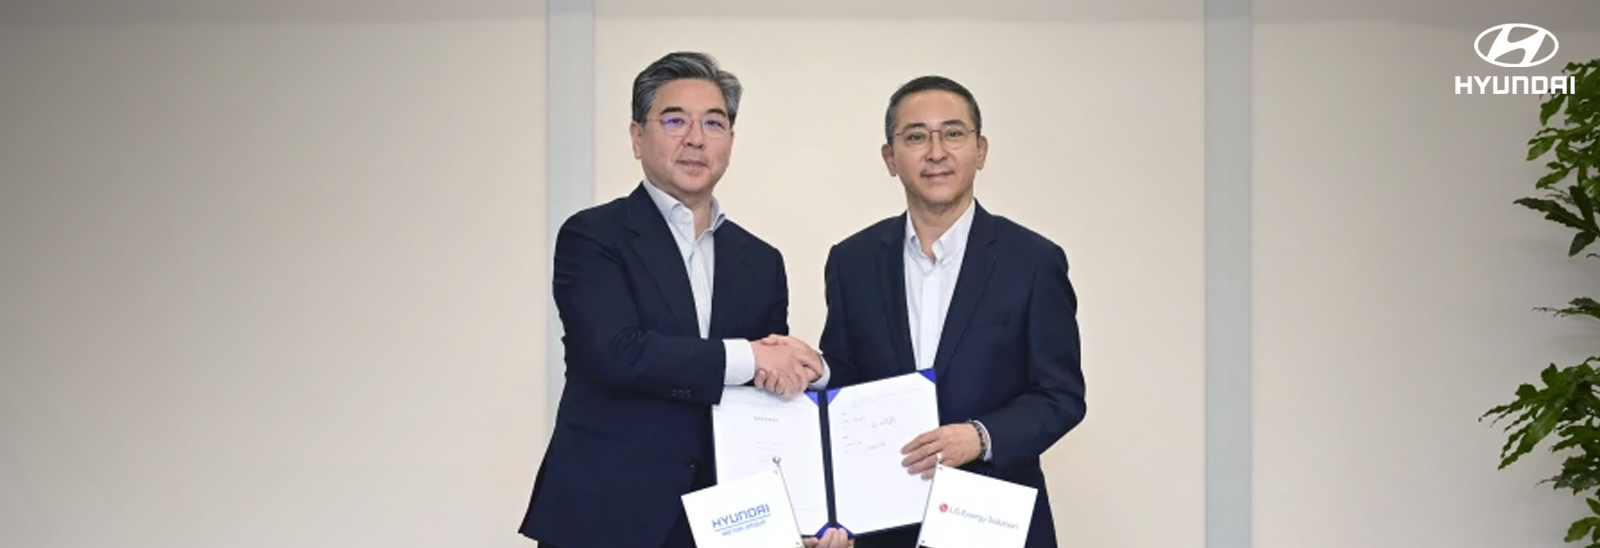 Ejecutivos de Hyundai Motor Group y LG Energy Solution